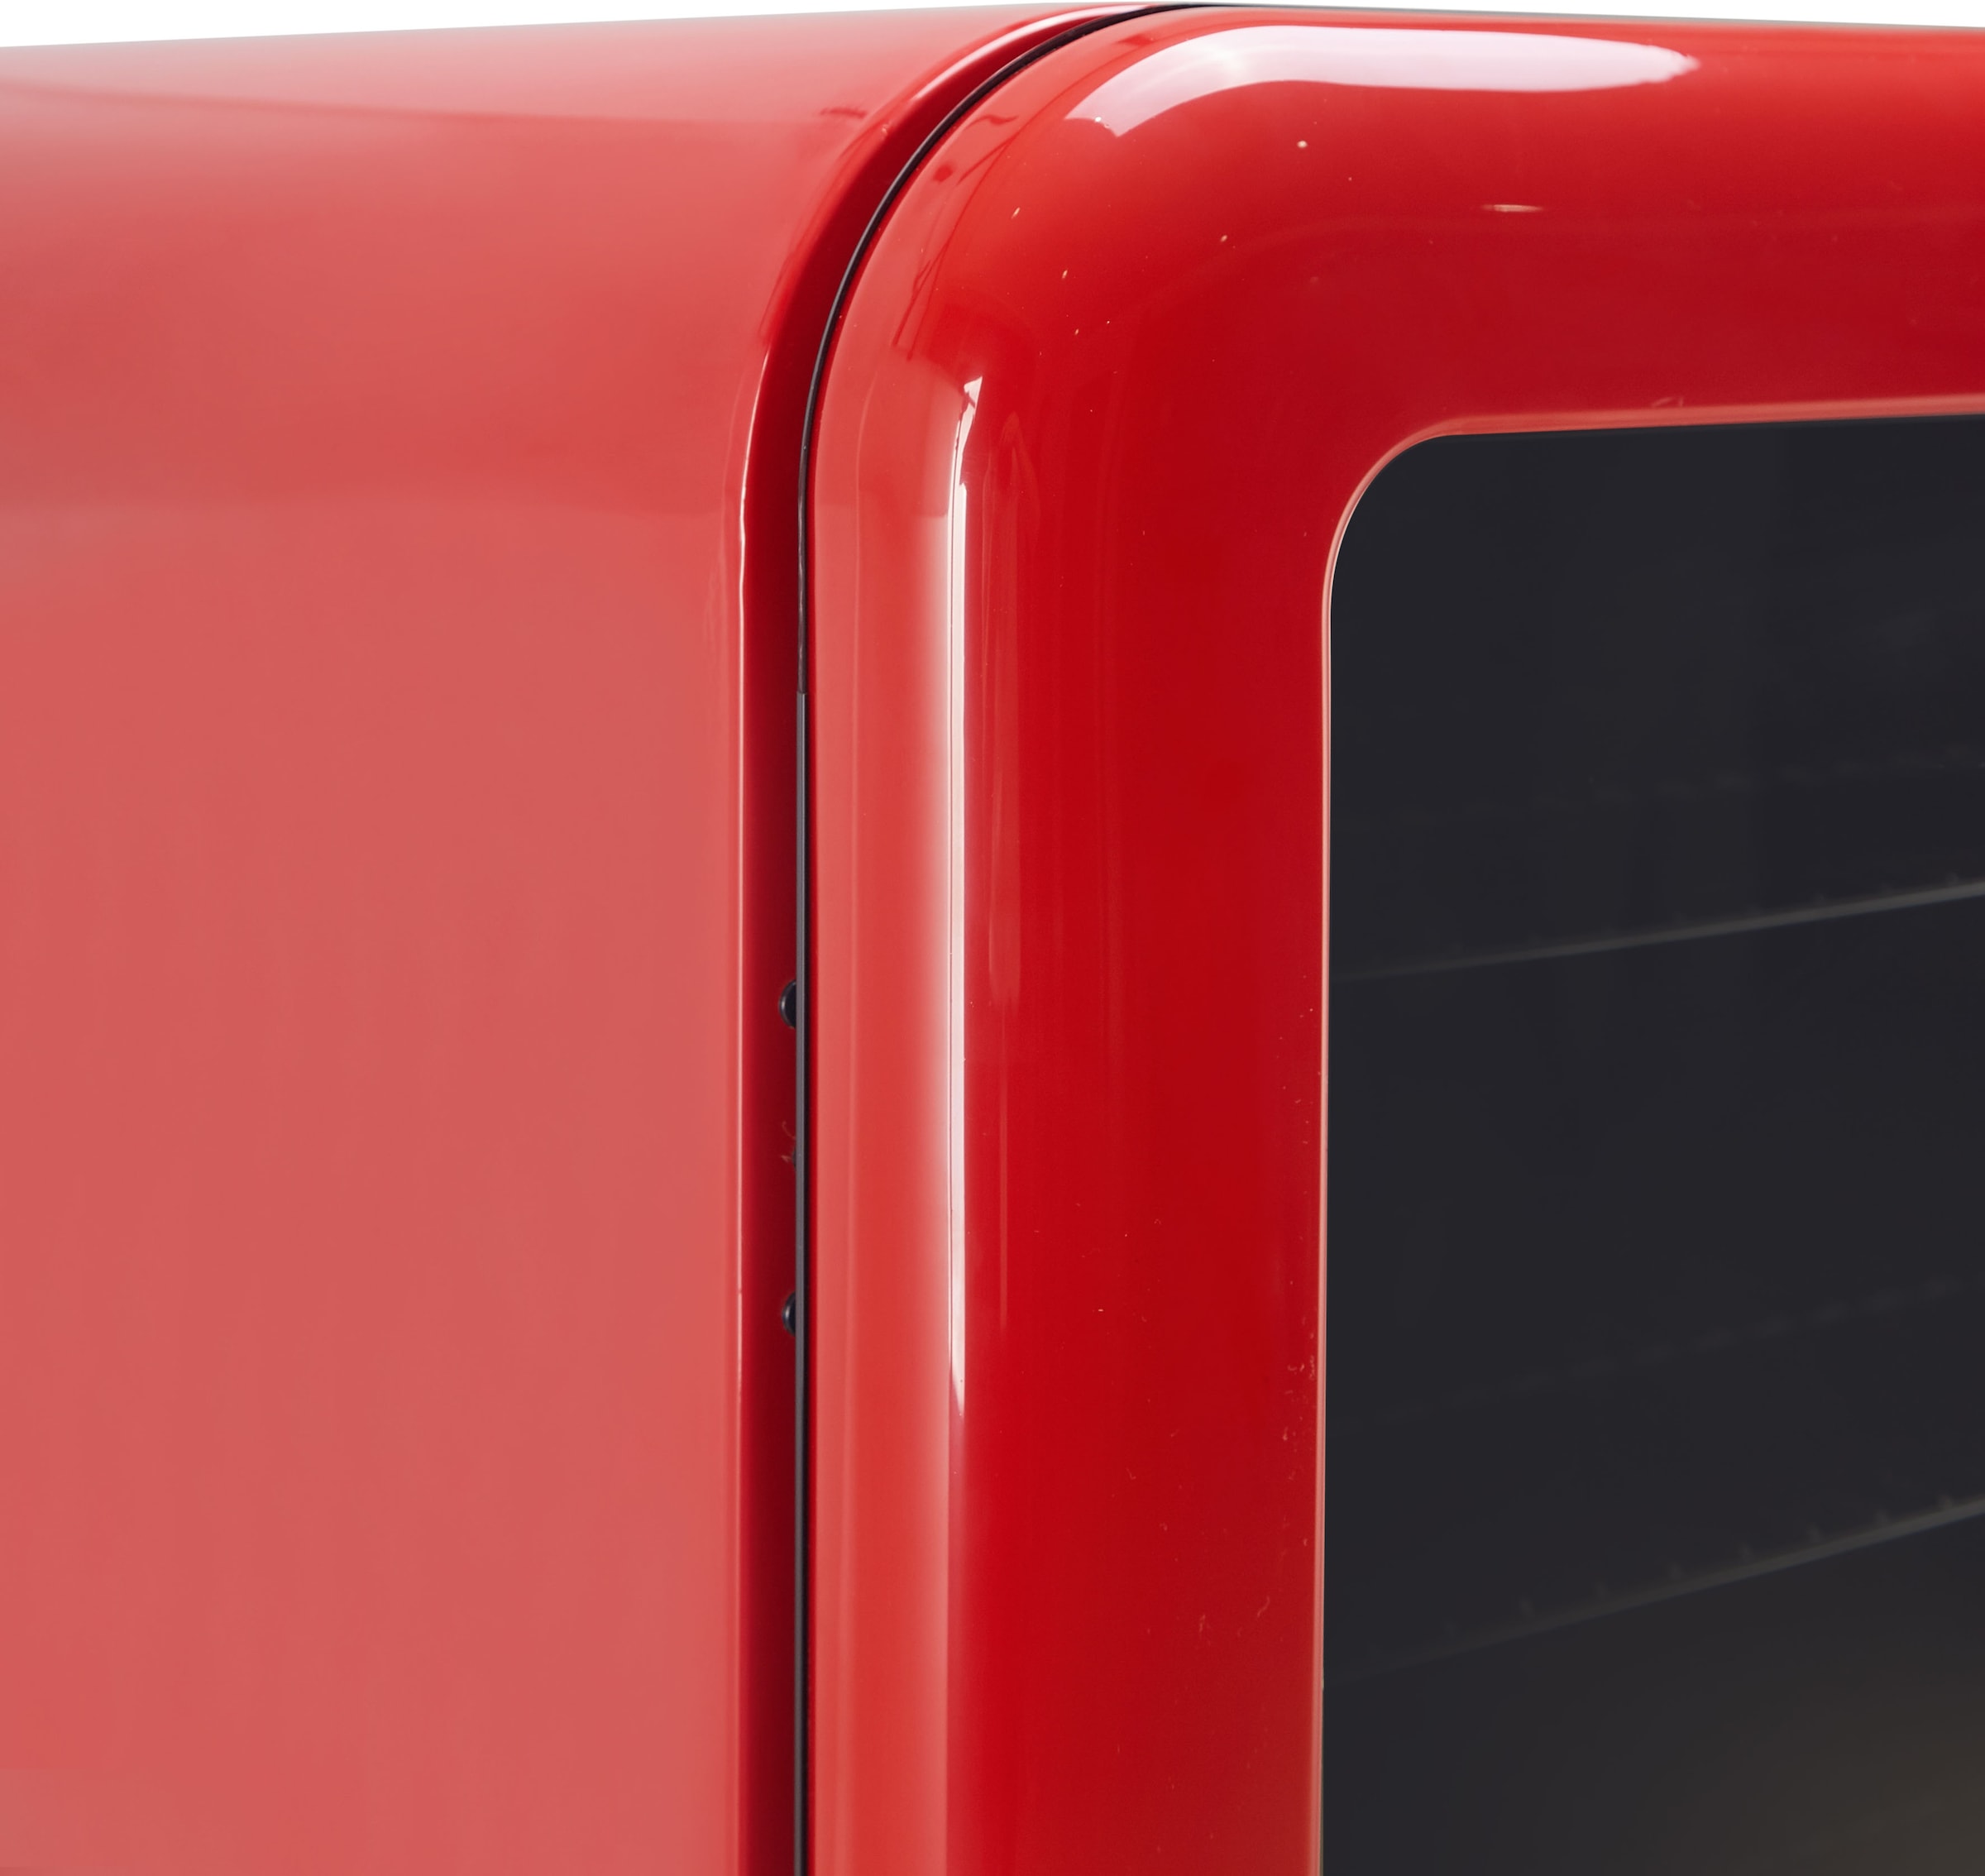 Hanseatic Getränkekühlschrank »HBC115FRRH red«, HBC115FRRH, 83,5 cm hoch, 55 cm breit